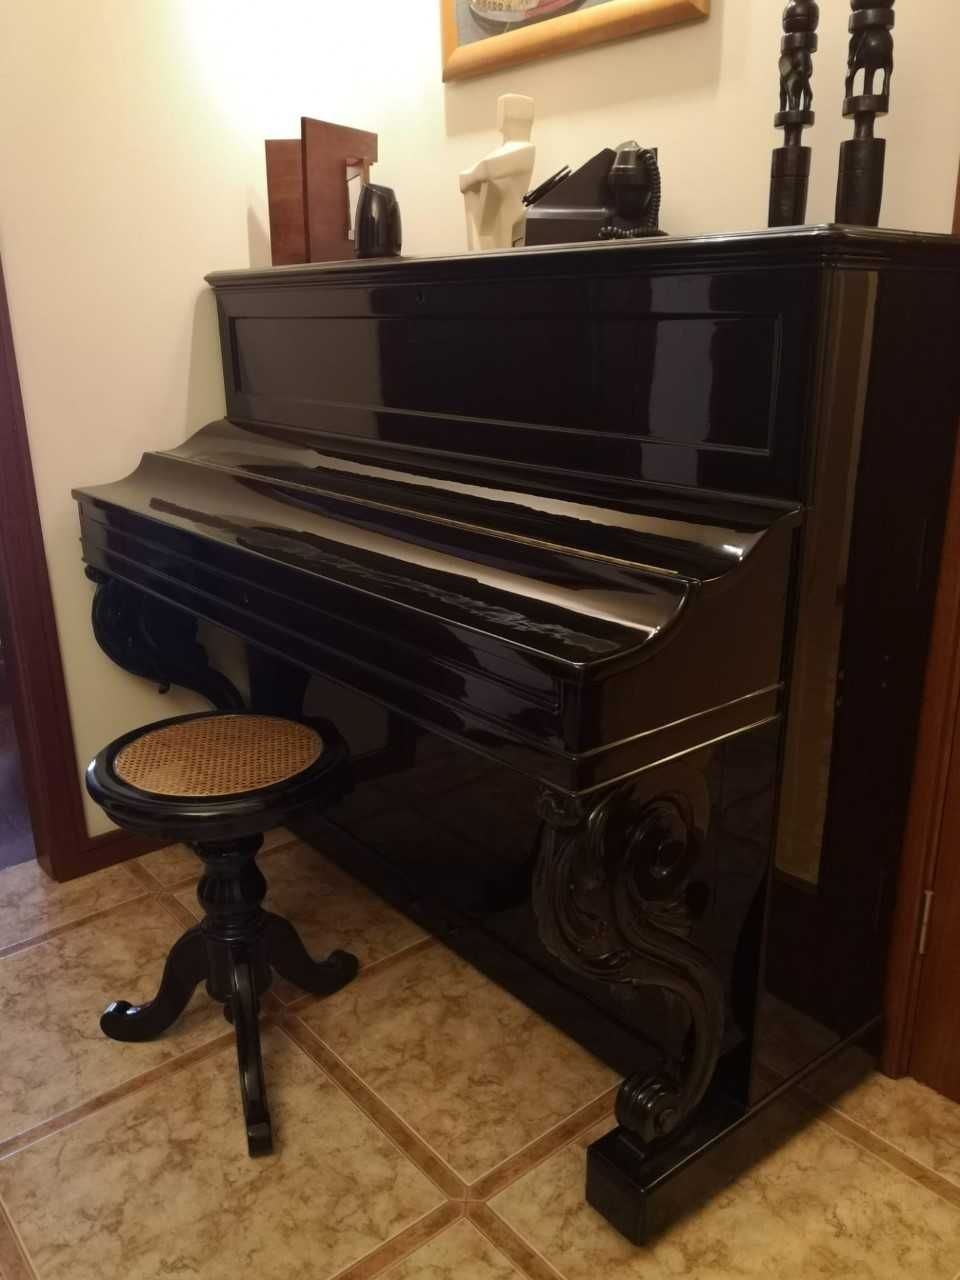 Piano vertical Pleyel